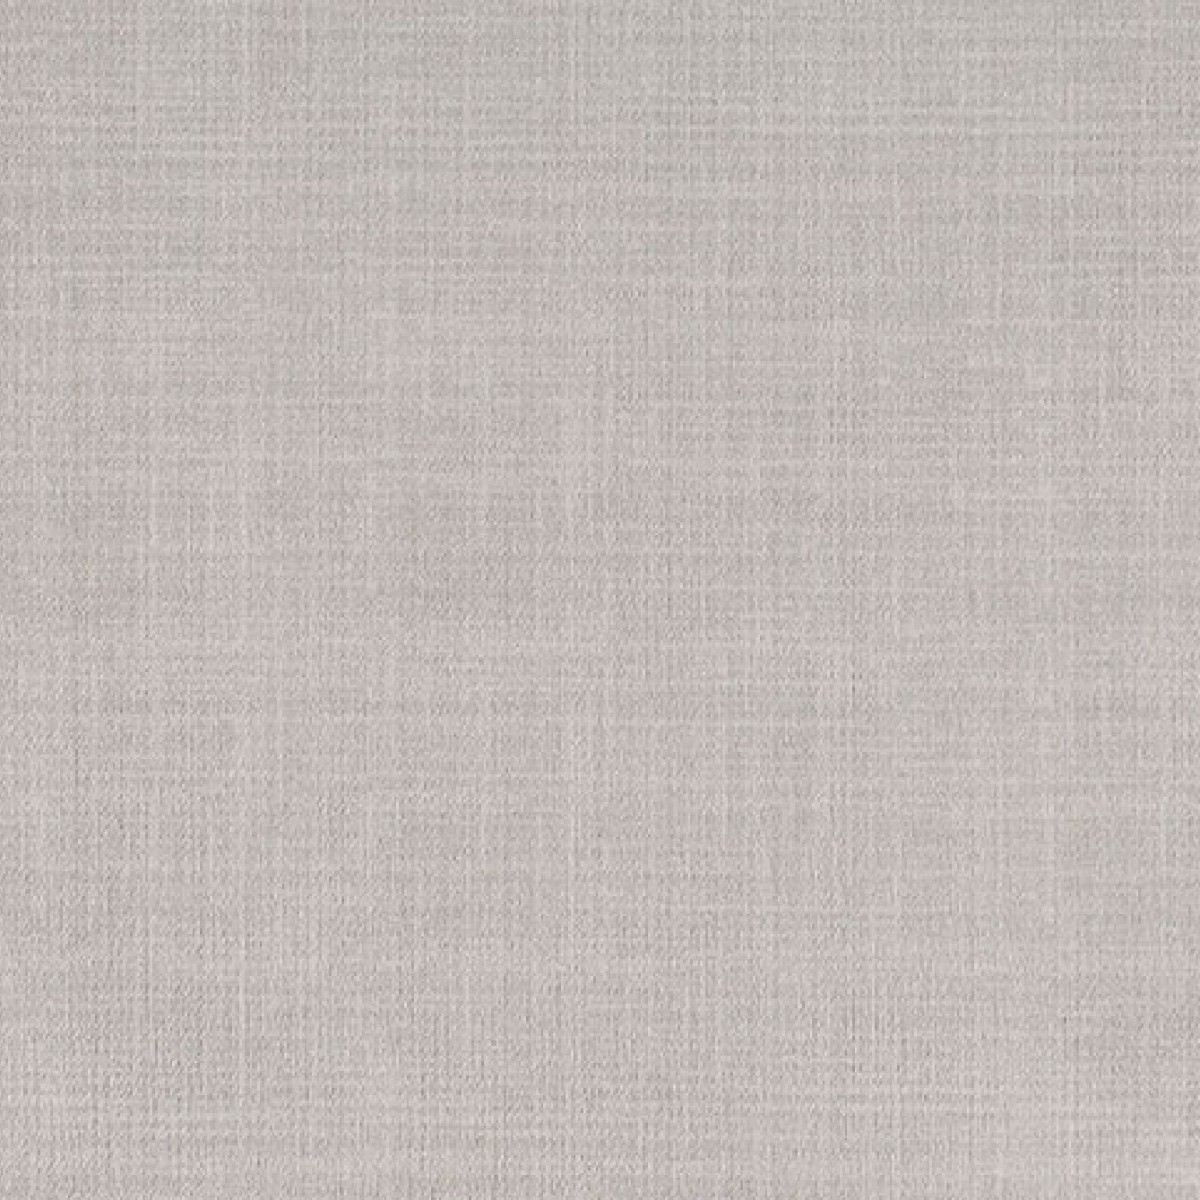 Milliken - Brushed Linen - Pale Pewter